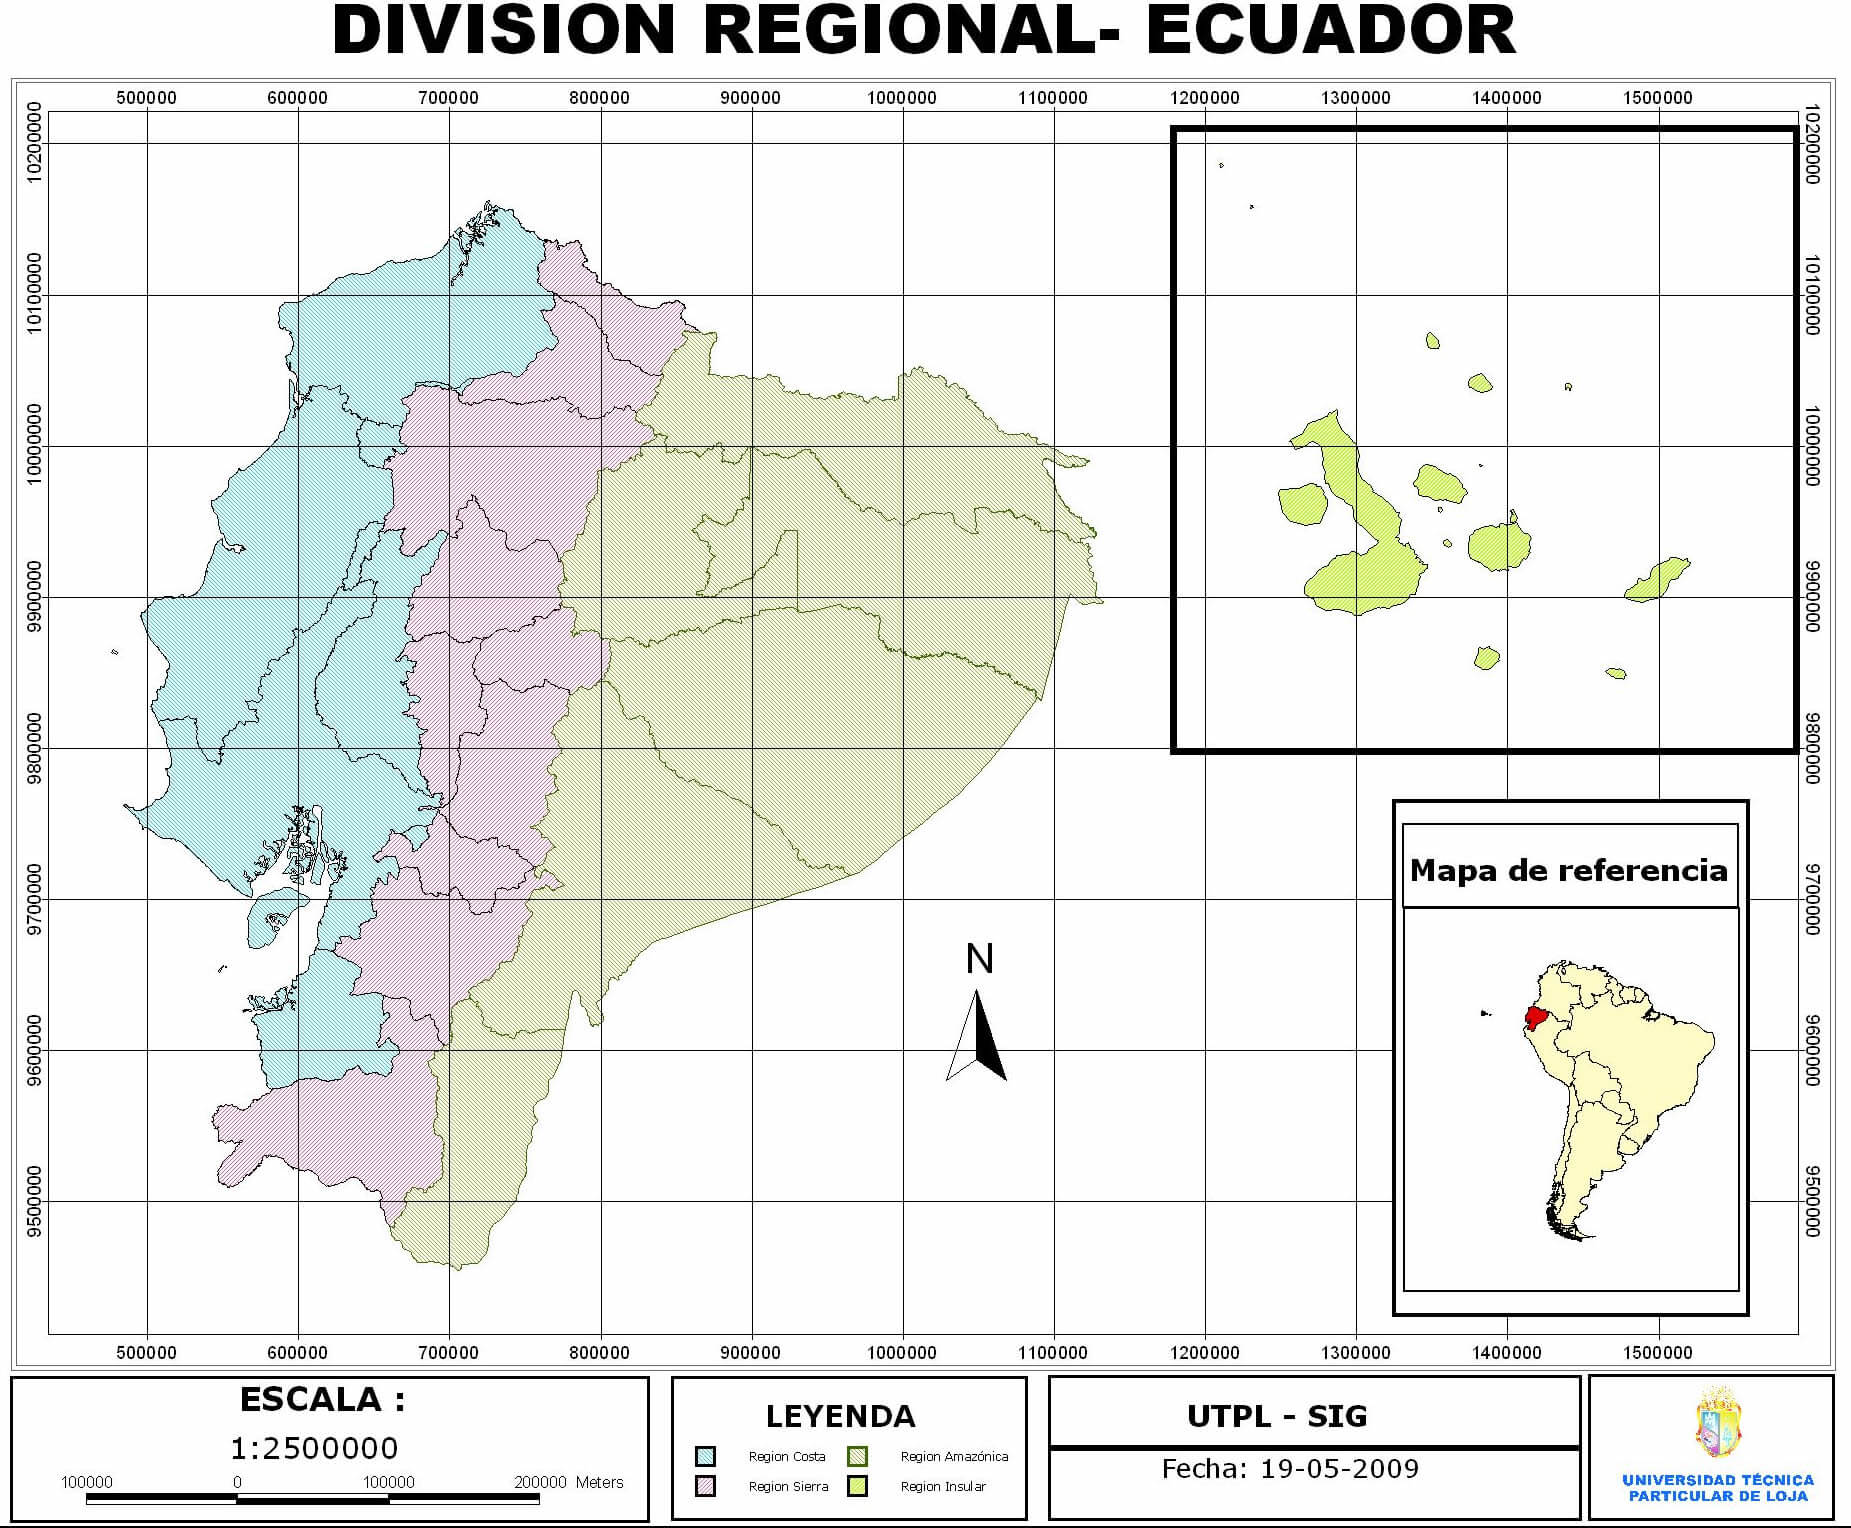 Regional Division von Ecuador 2009